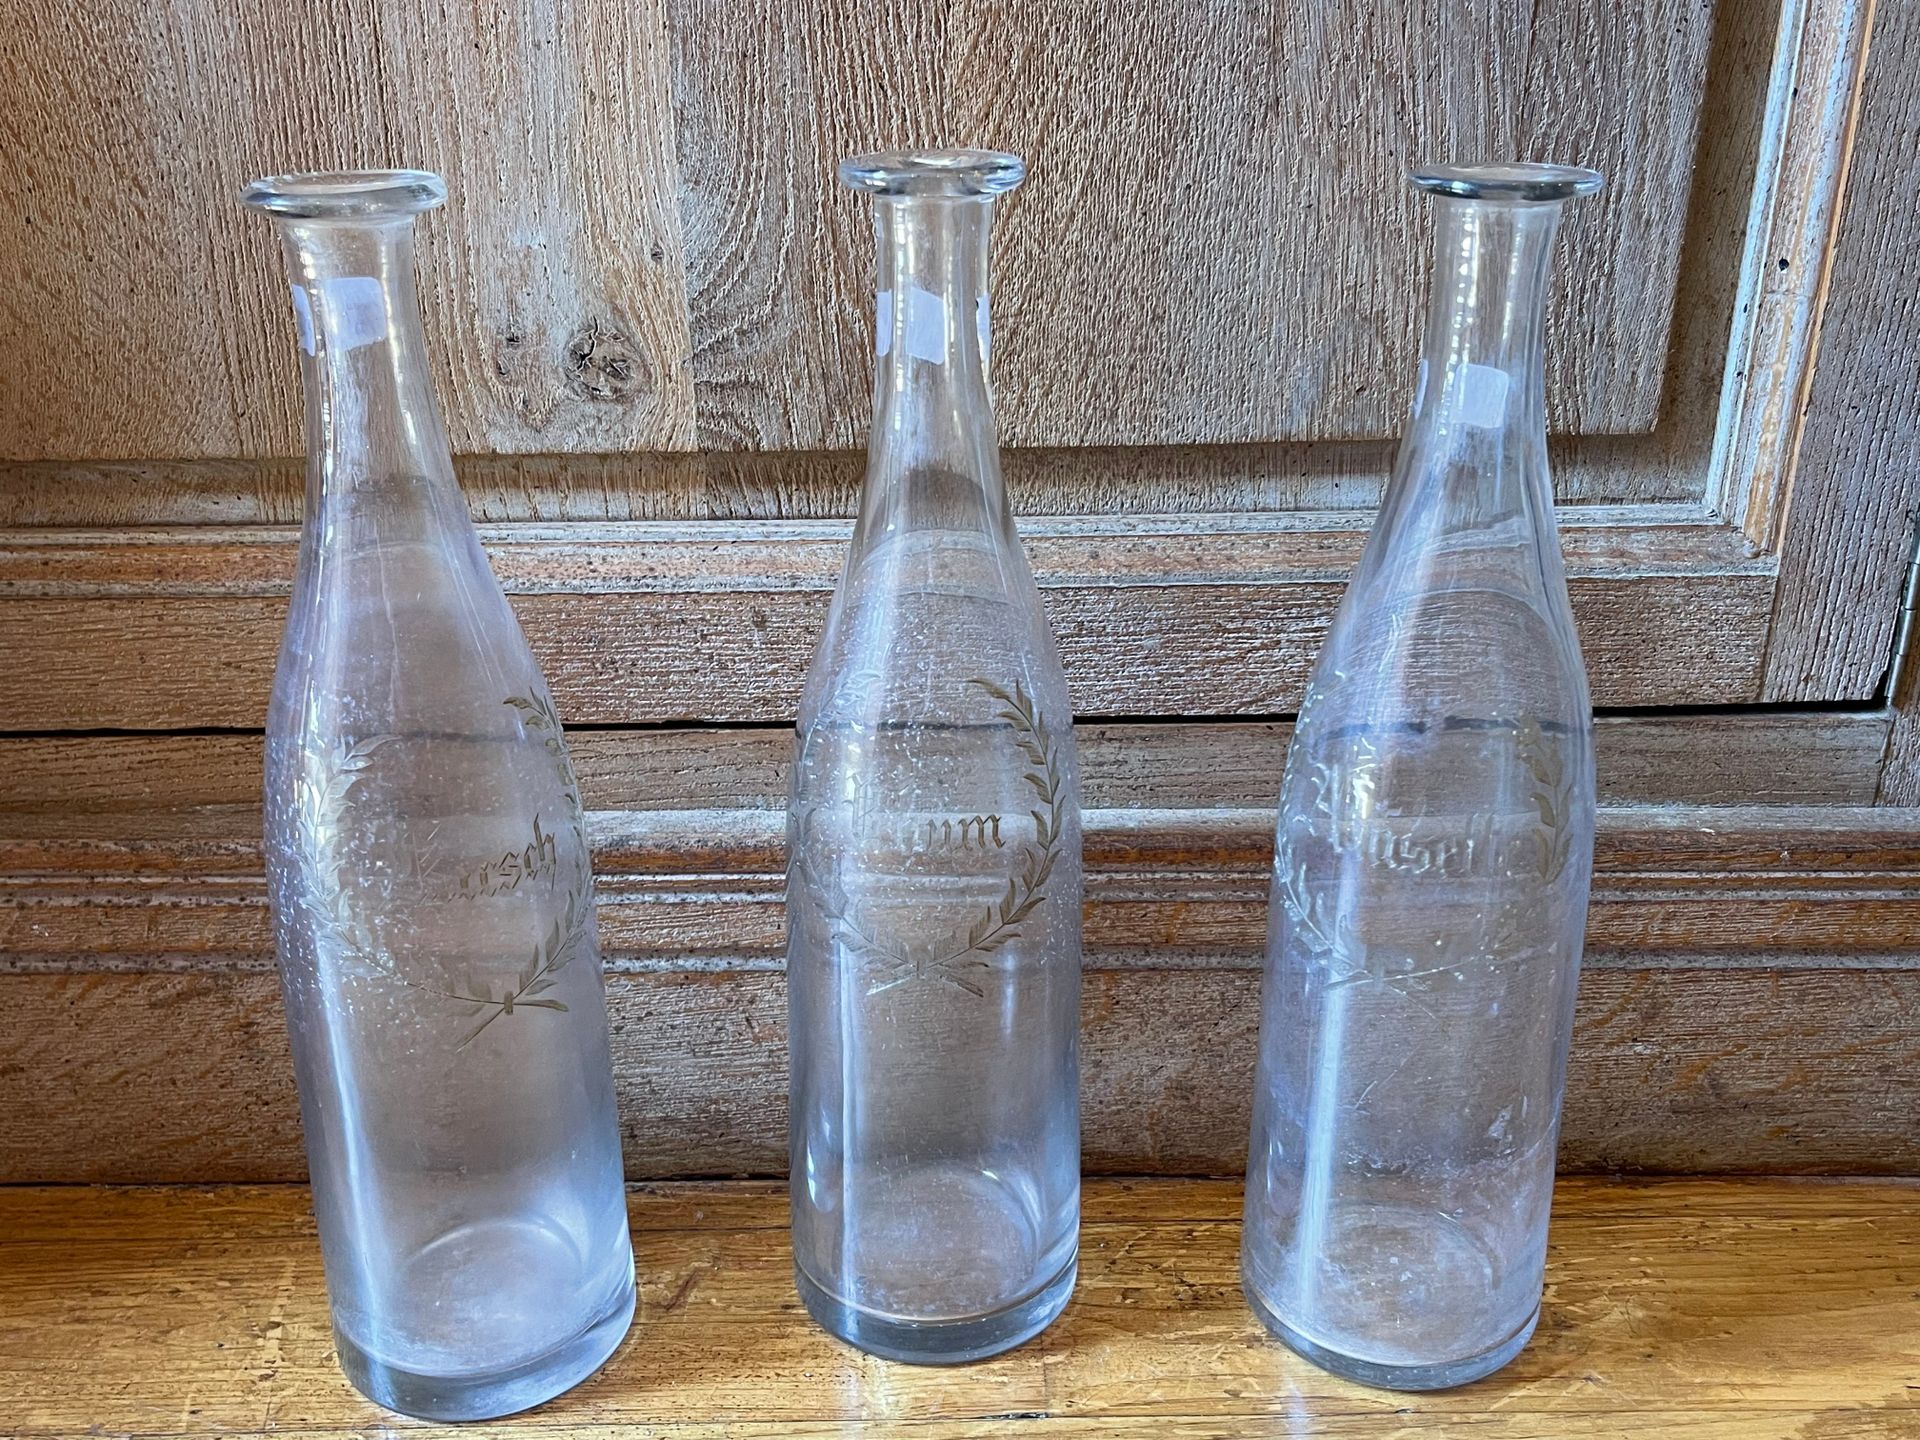 Null 三个雕刻的玻璃瓶 "Rhum, Anisette, Kirsh"。